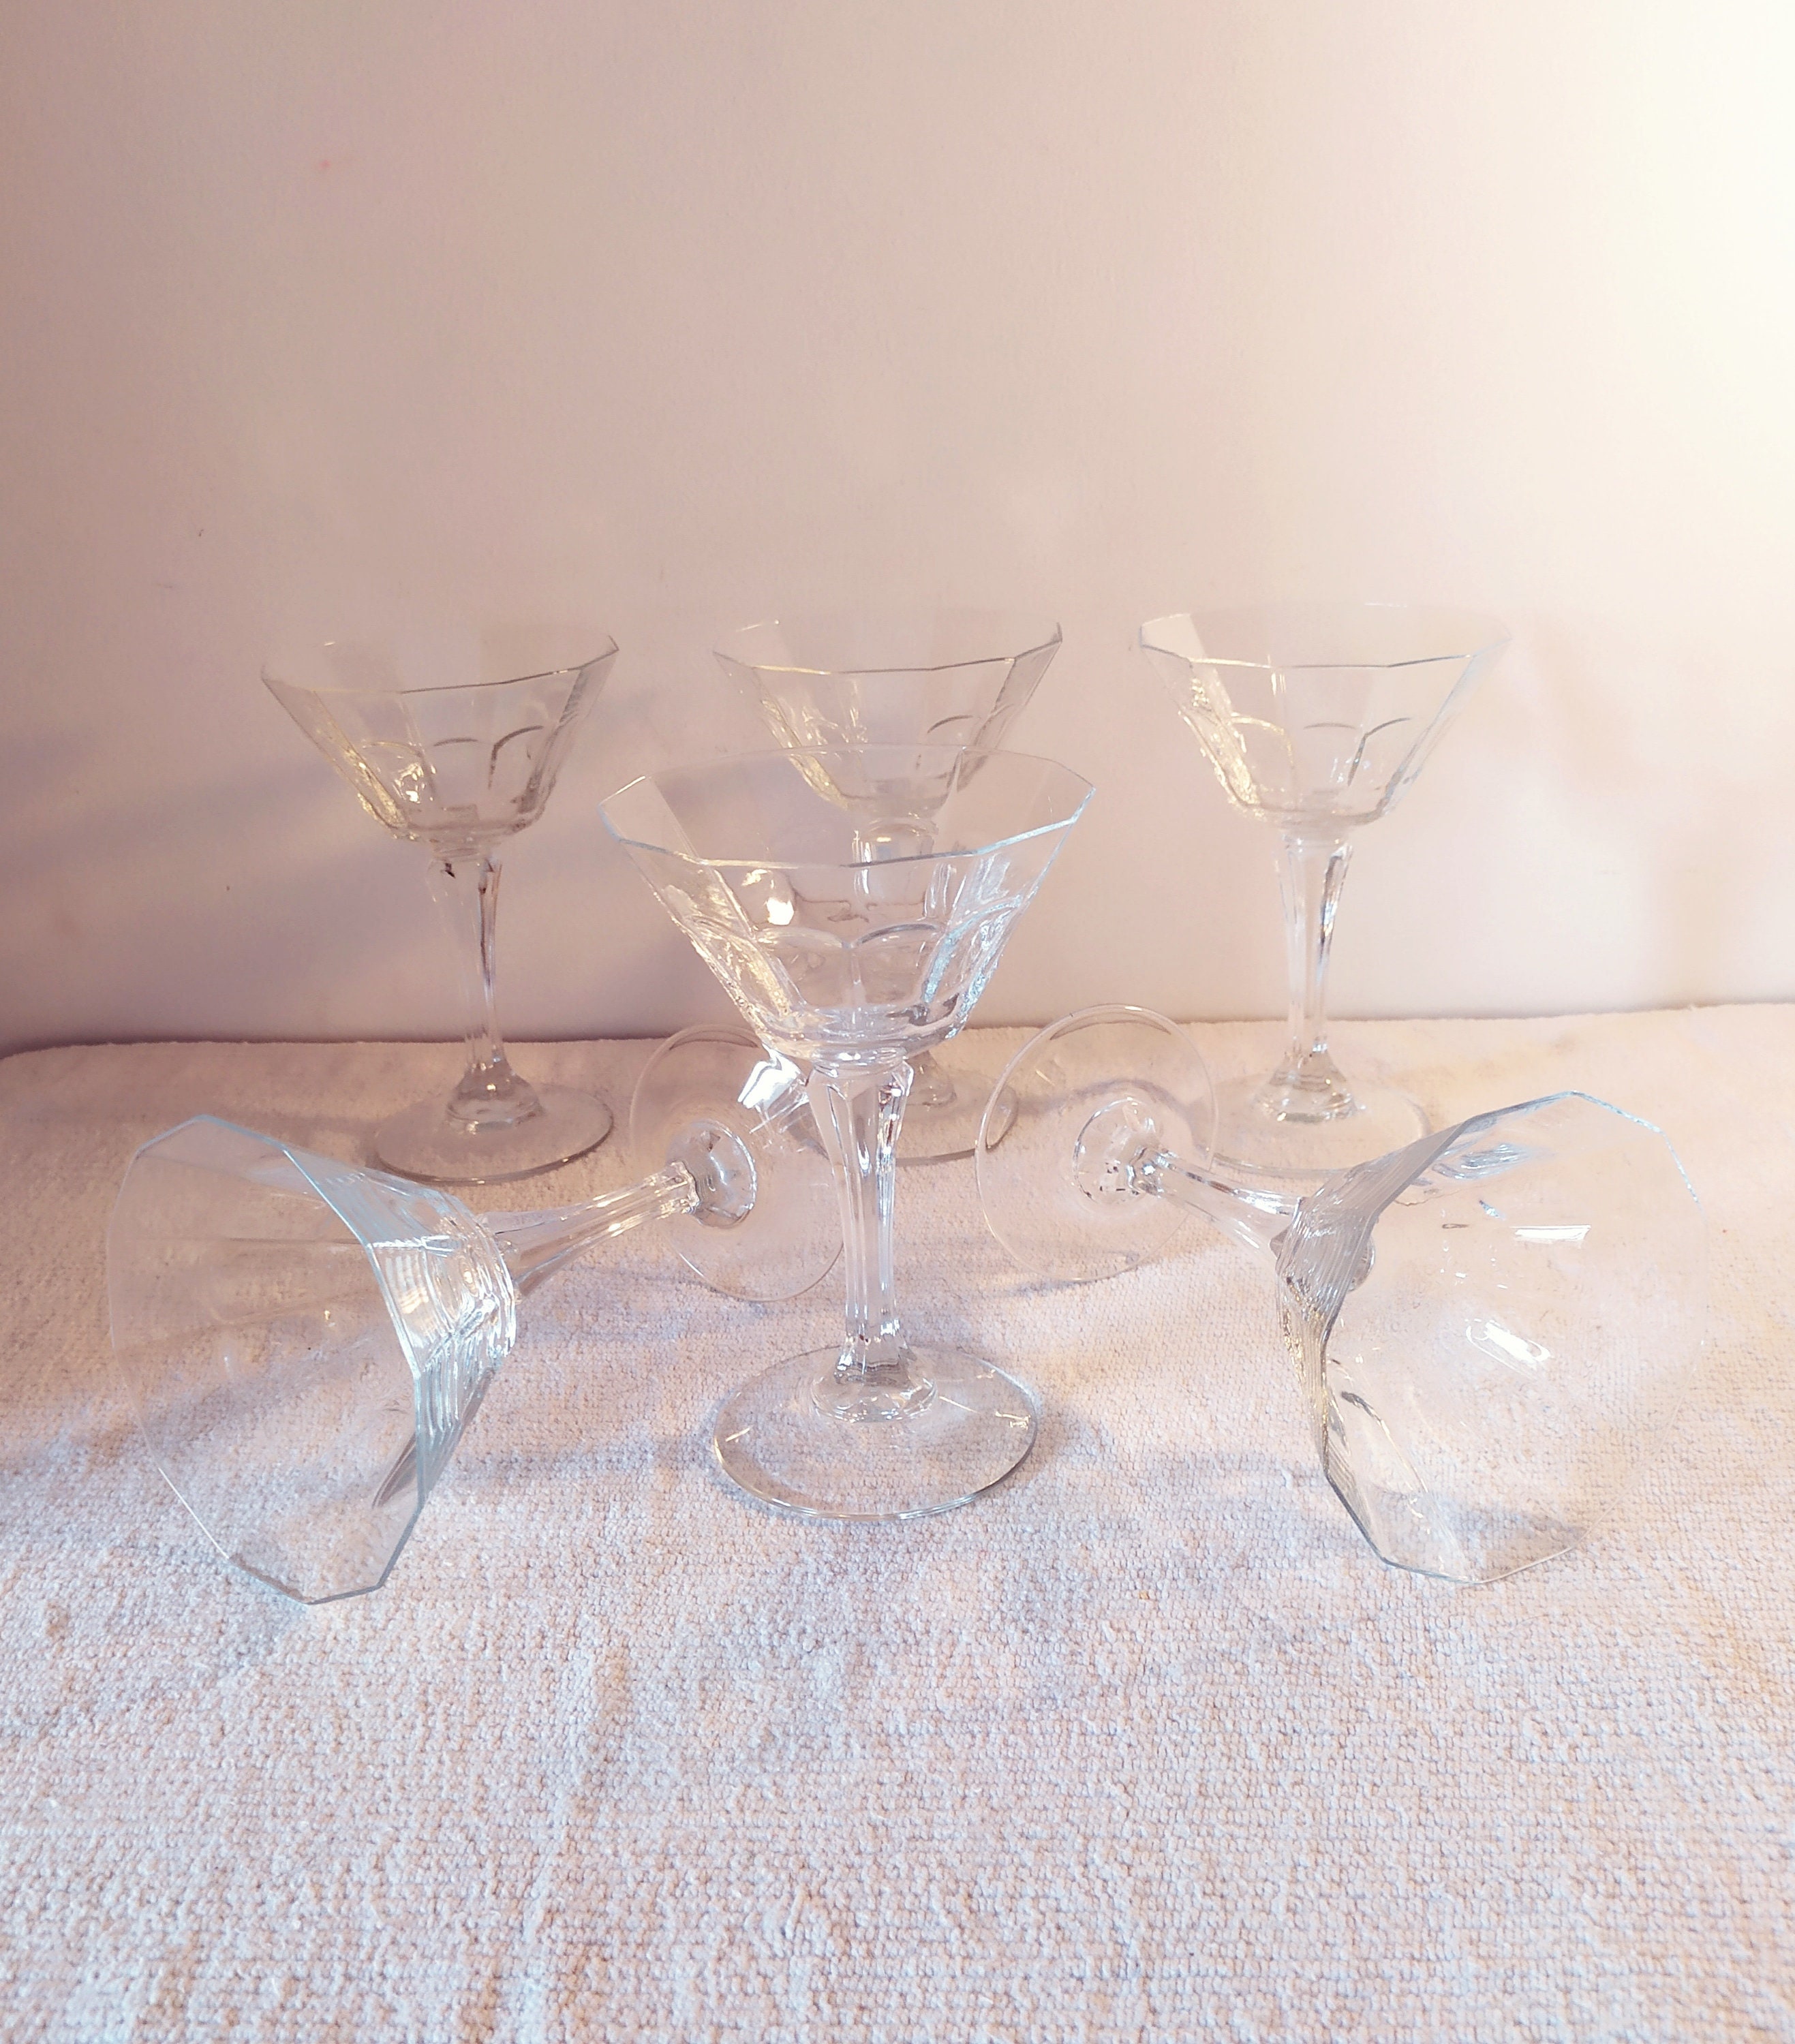 Coupes à Champagne.1960.x6.flutes Chapagne.champagne.verres Ancens.vaisselle Ancienne.vaisselle Fran